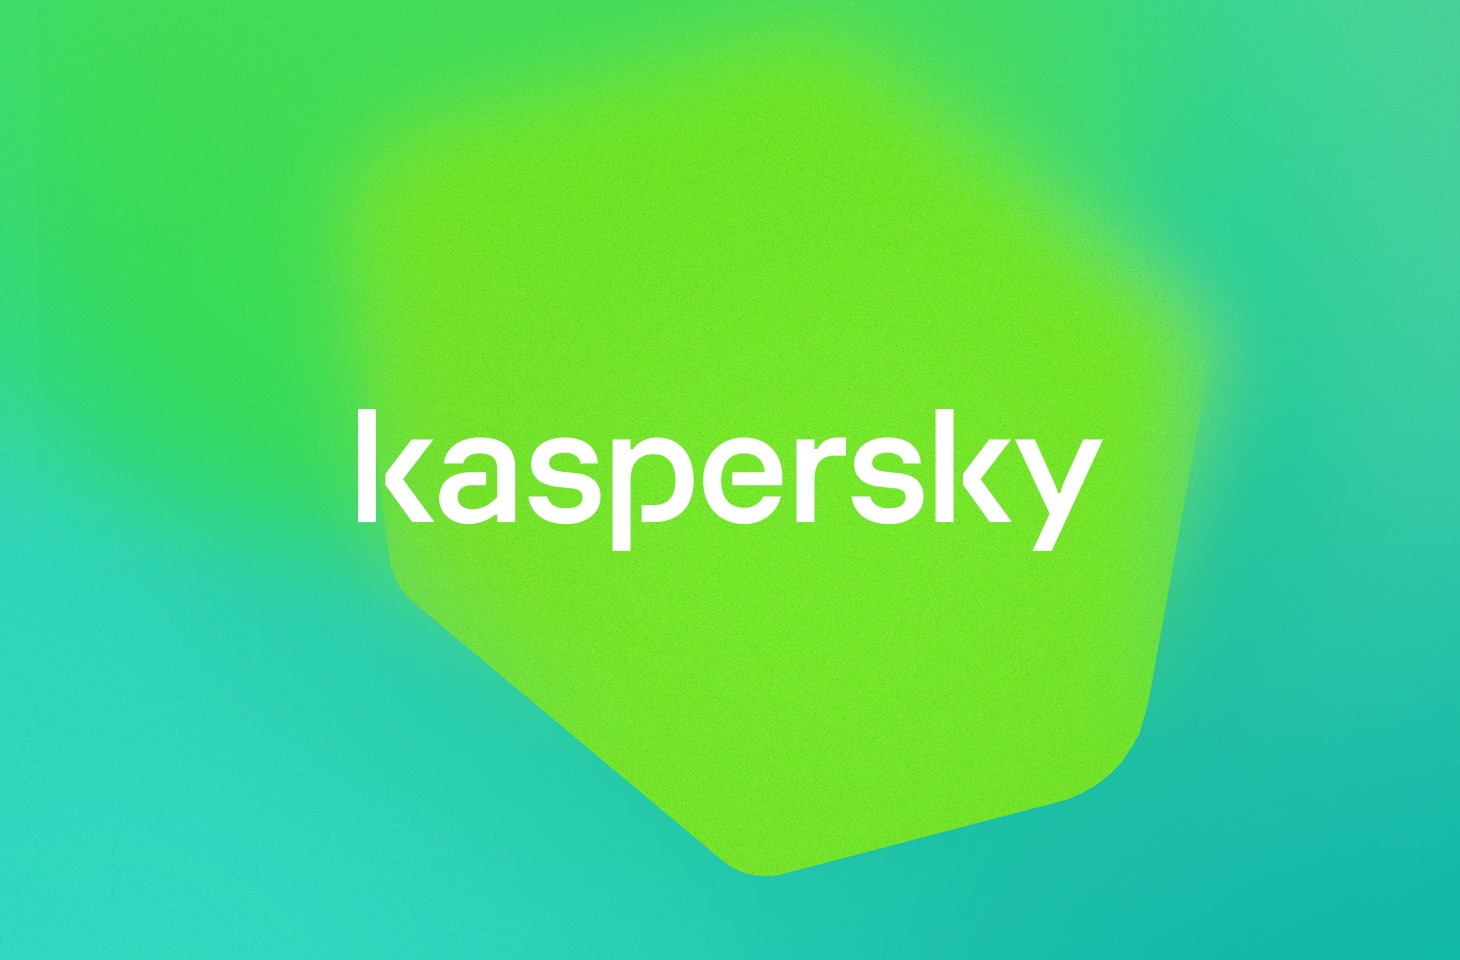 kaspersky total security crack 2019